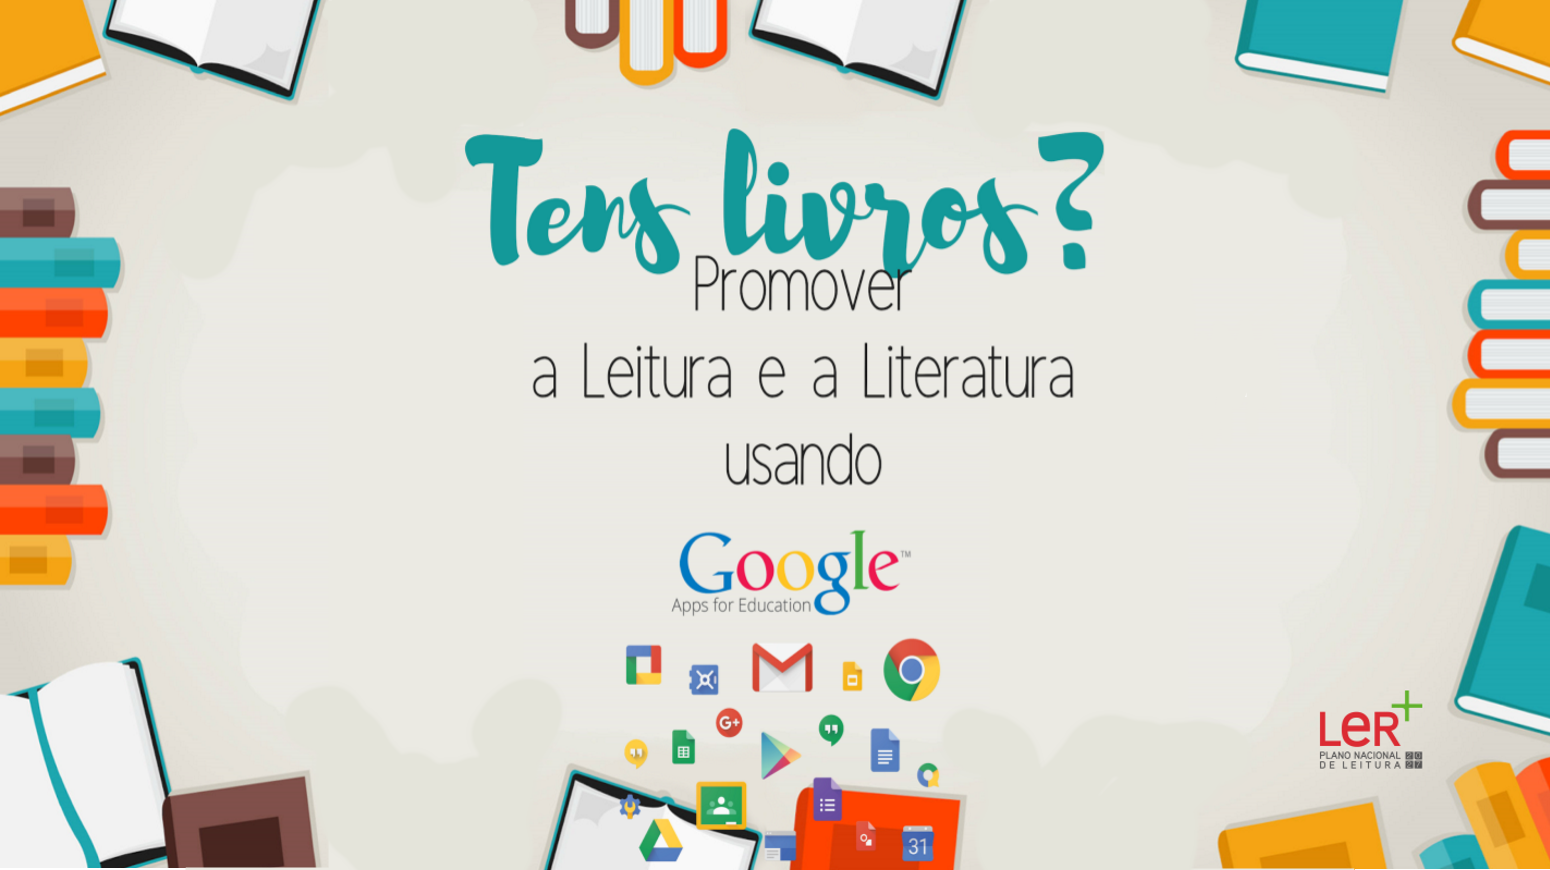 Tens livros? - promover a leitura e a literatura usando aplicações Google